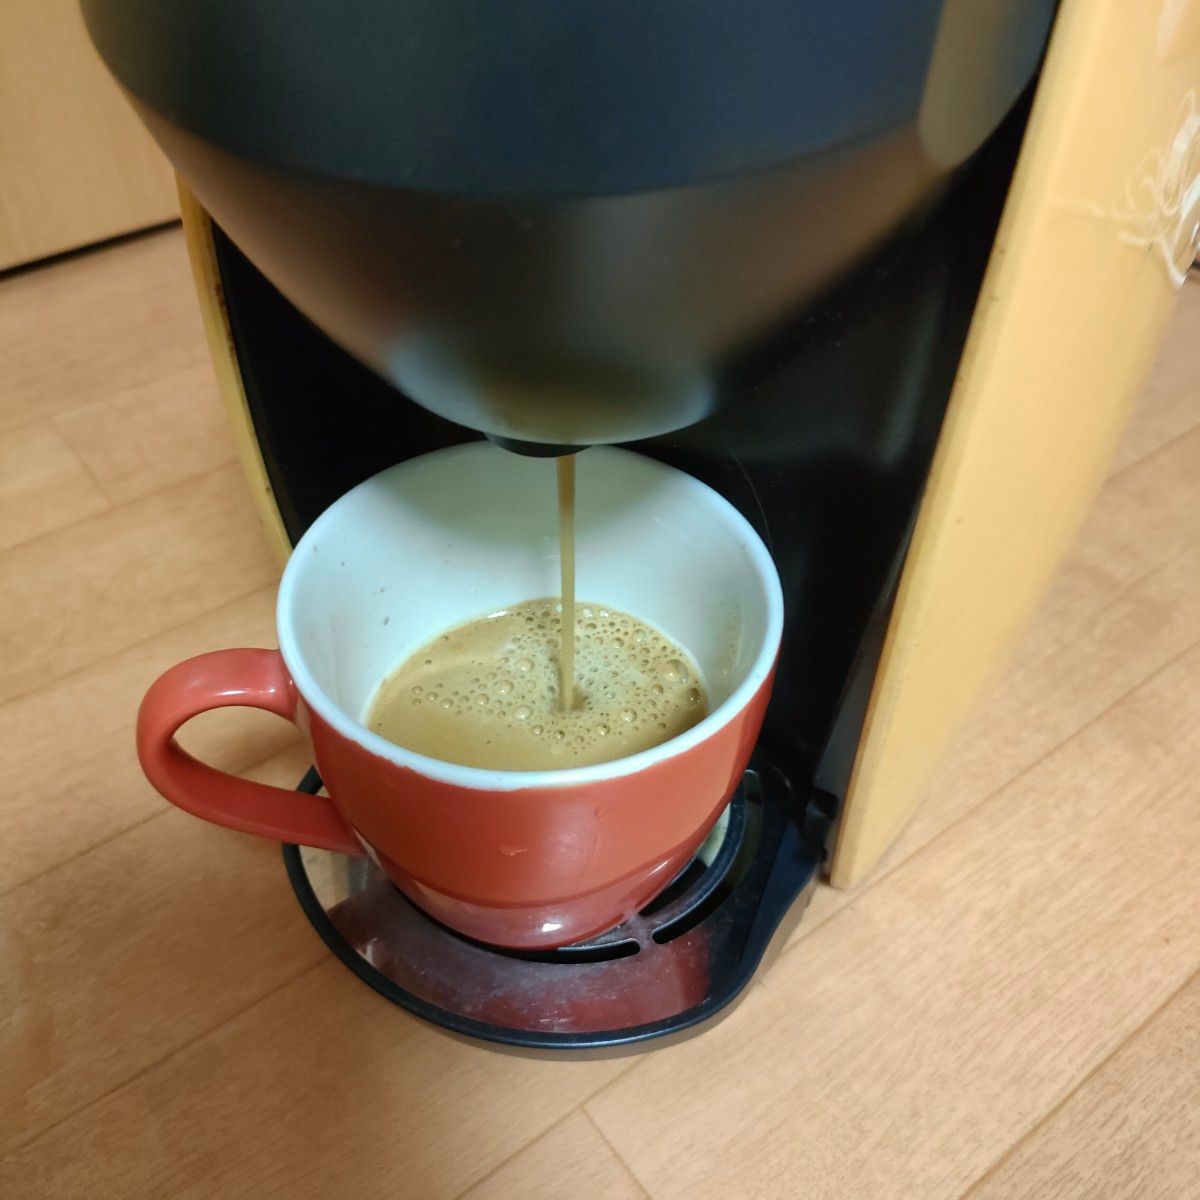 ネスカフェ　バリスタ　PM9630  コーヒーメーカー